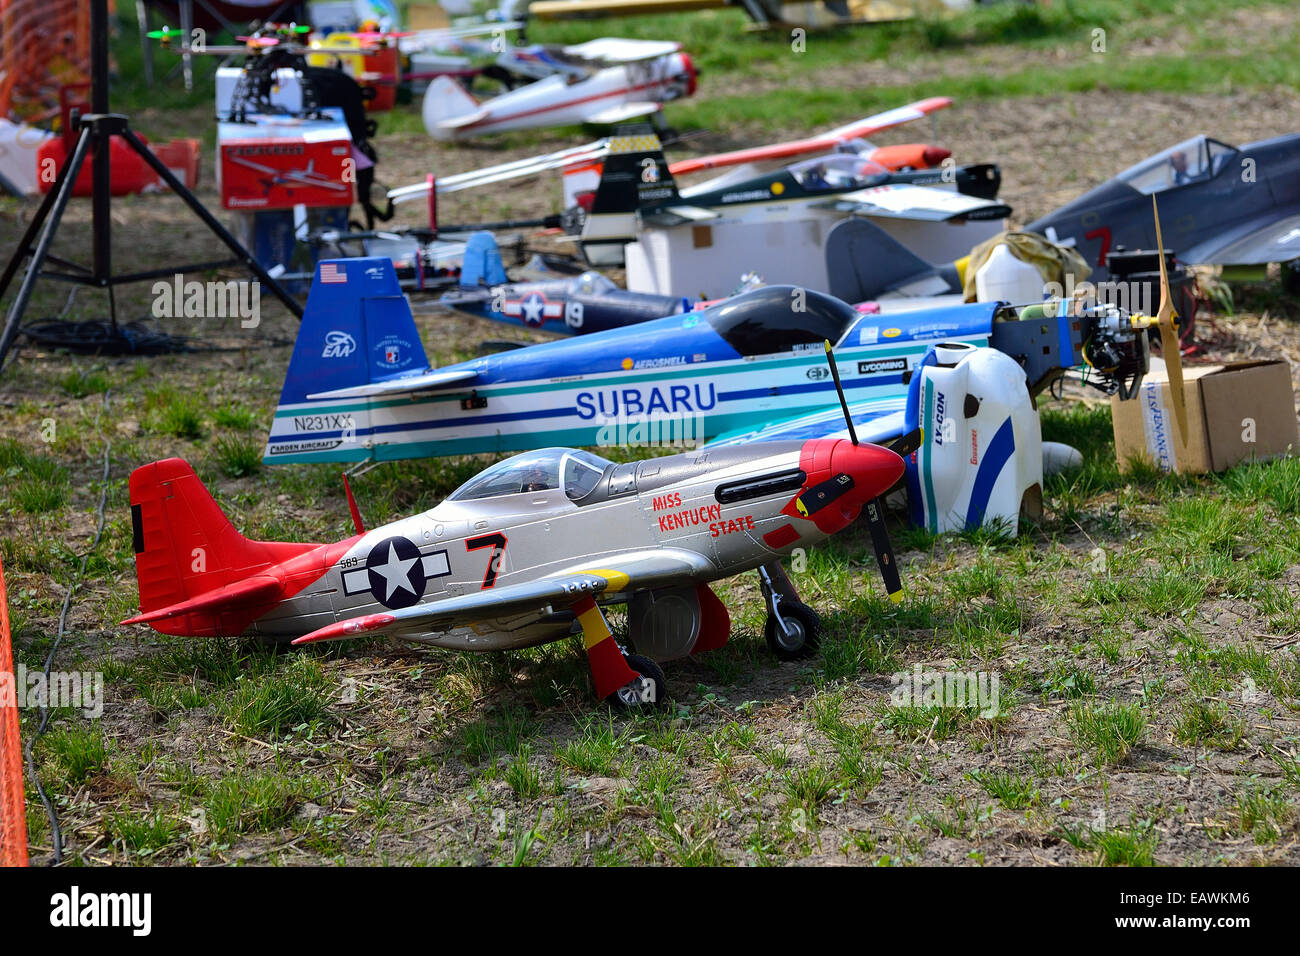 Reunión de aeronaves modelos de Aron (Mayenne, País del Loira, Francia). Foto de stock